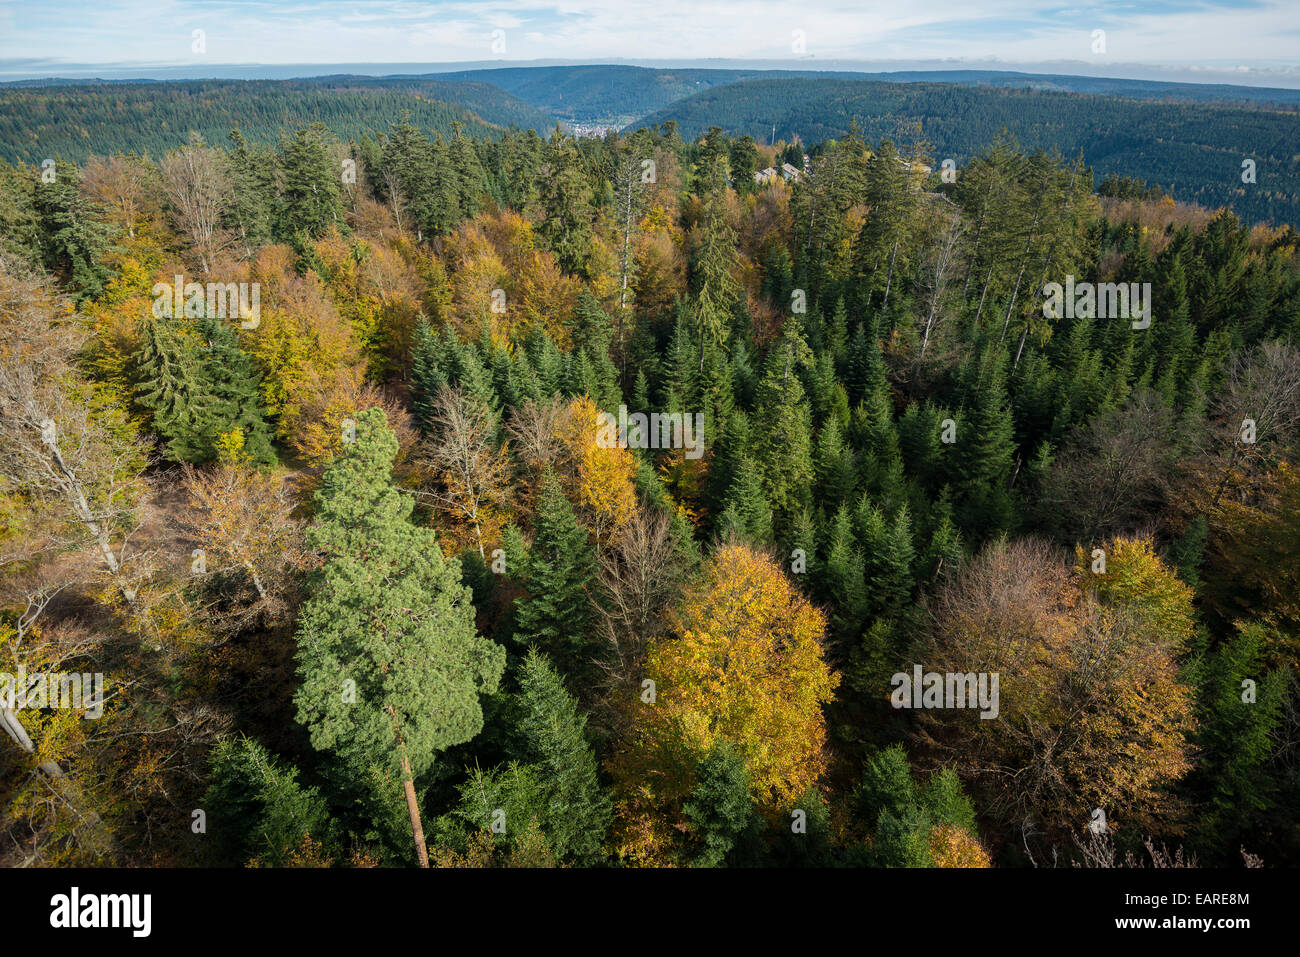 Mezcla de bosques otoñales, a vista de pájaro, el norte de la Selva Negra, en el Estado federado de Baden-Württemberg, Alemania Foto de stock